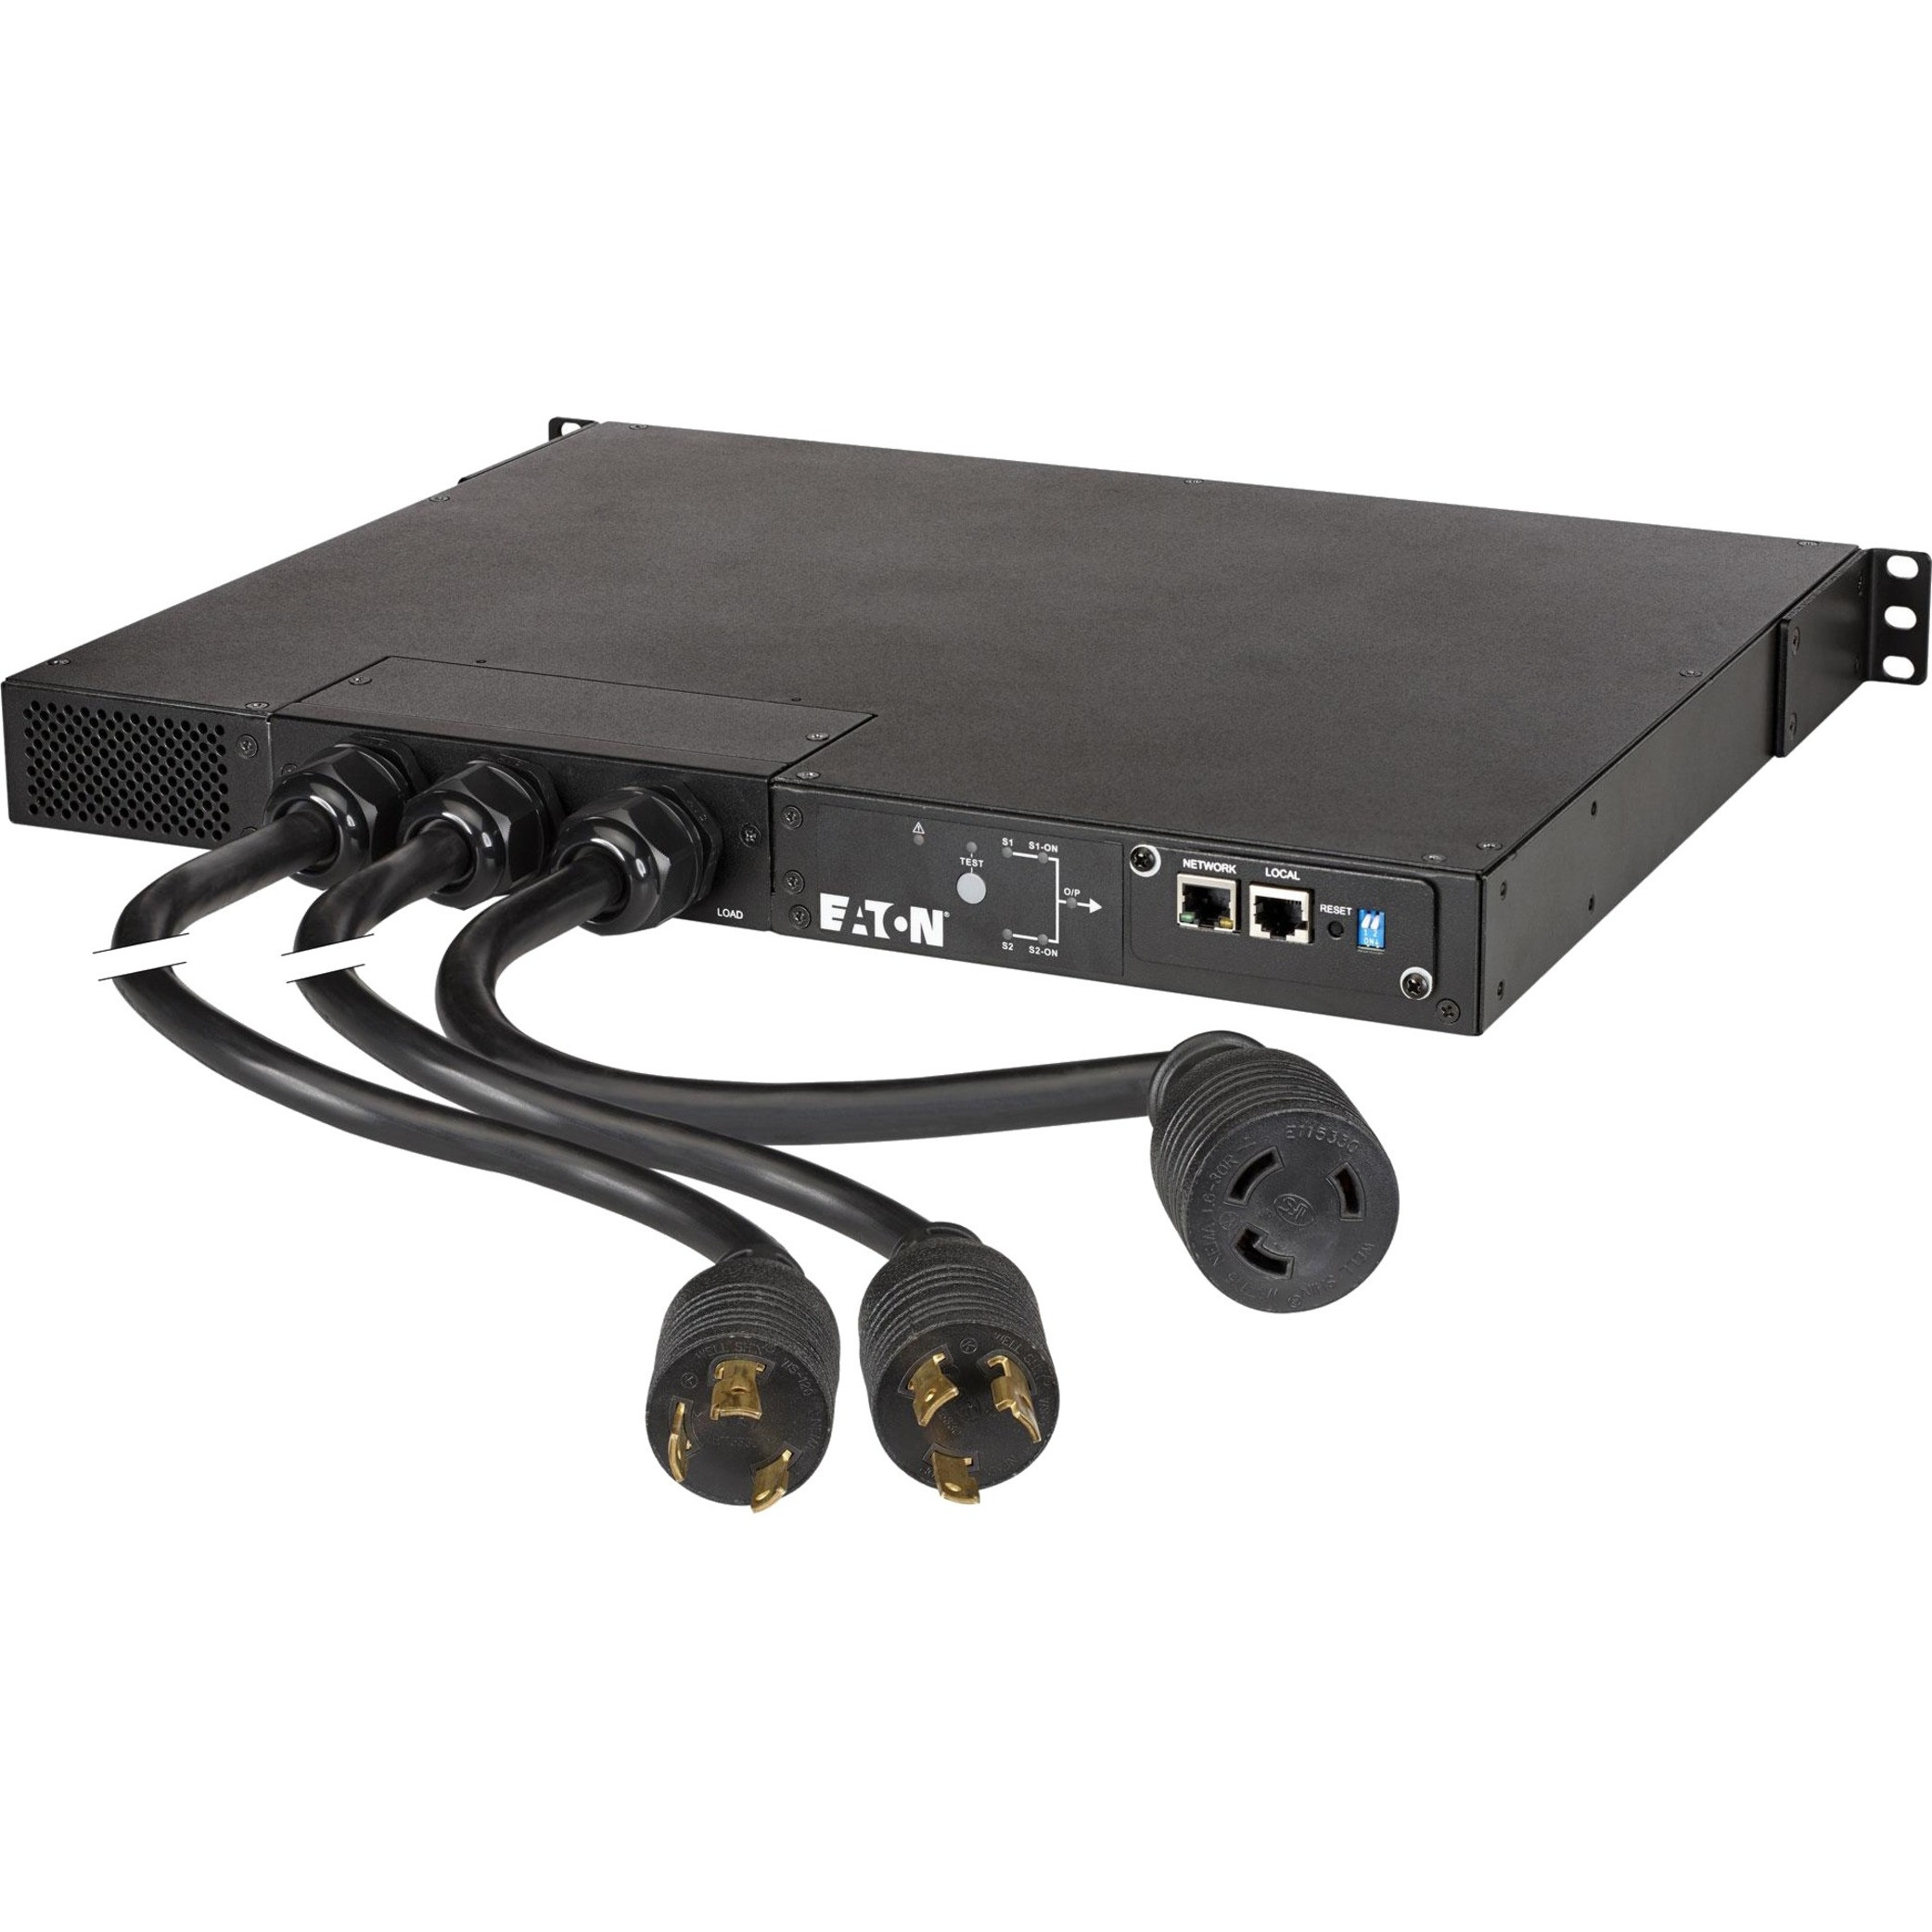 Eaton eATS30 Remote Power Management Switch2 x Network (RJ-45) Port EATS30H